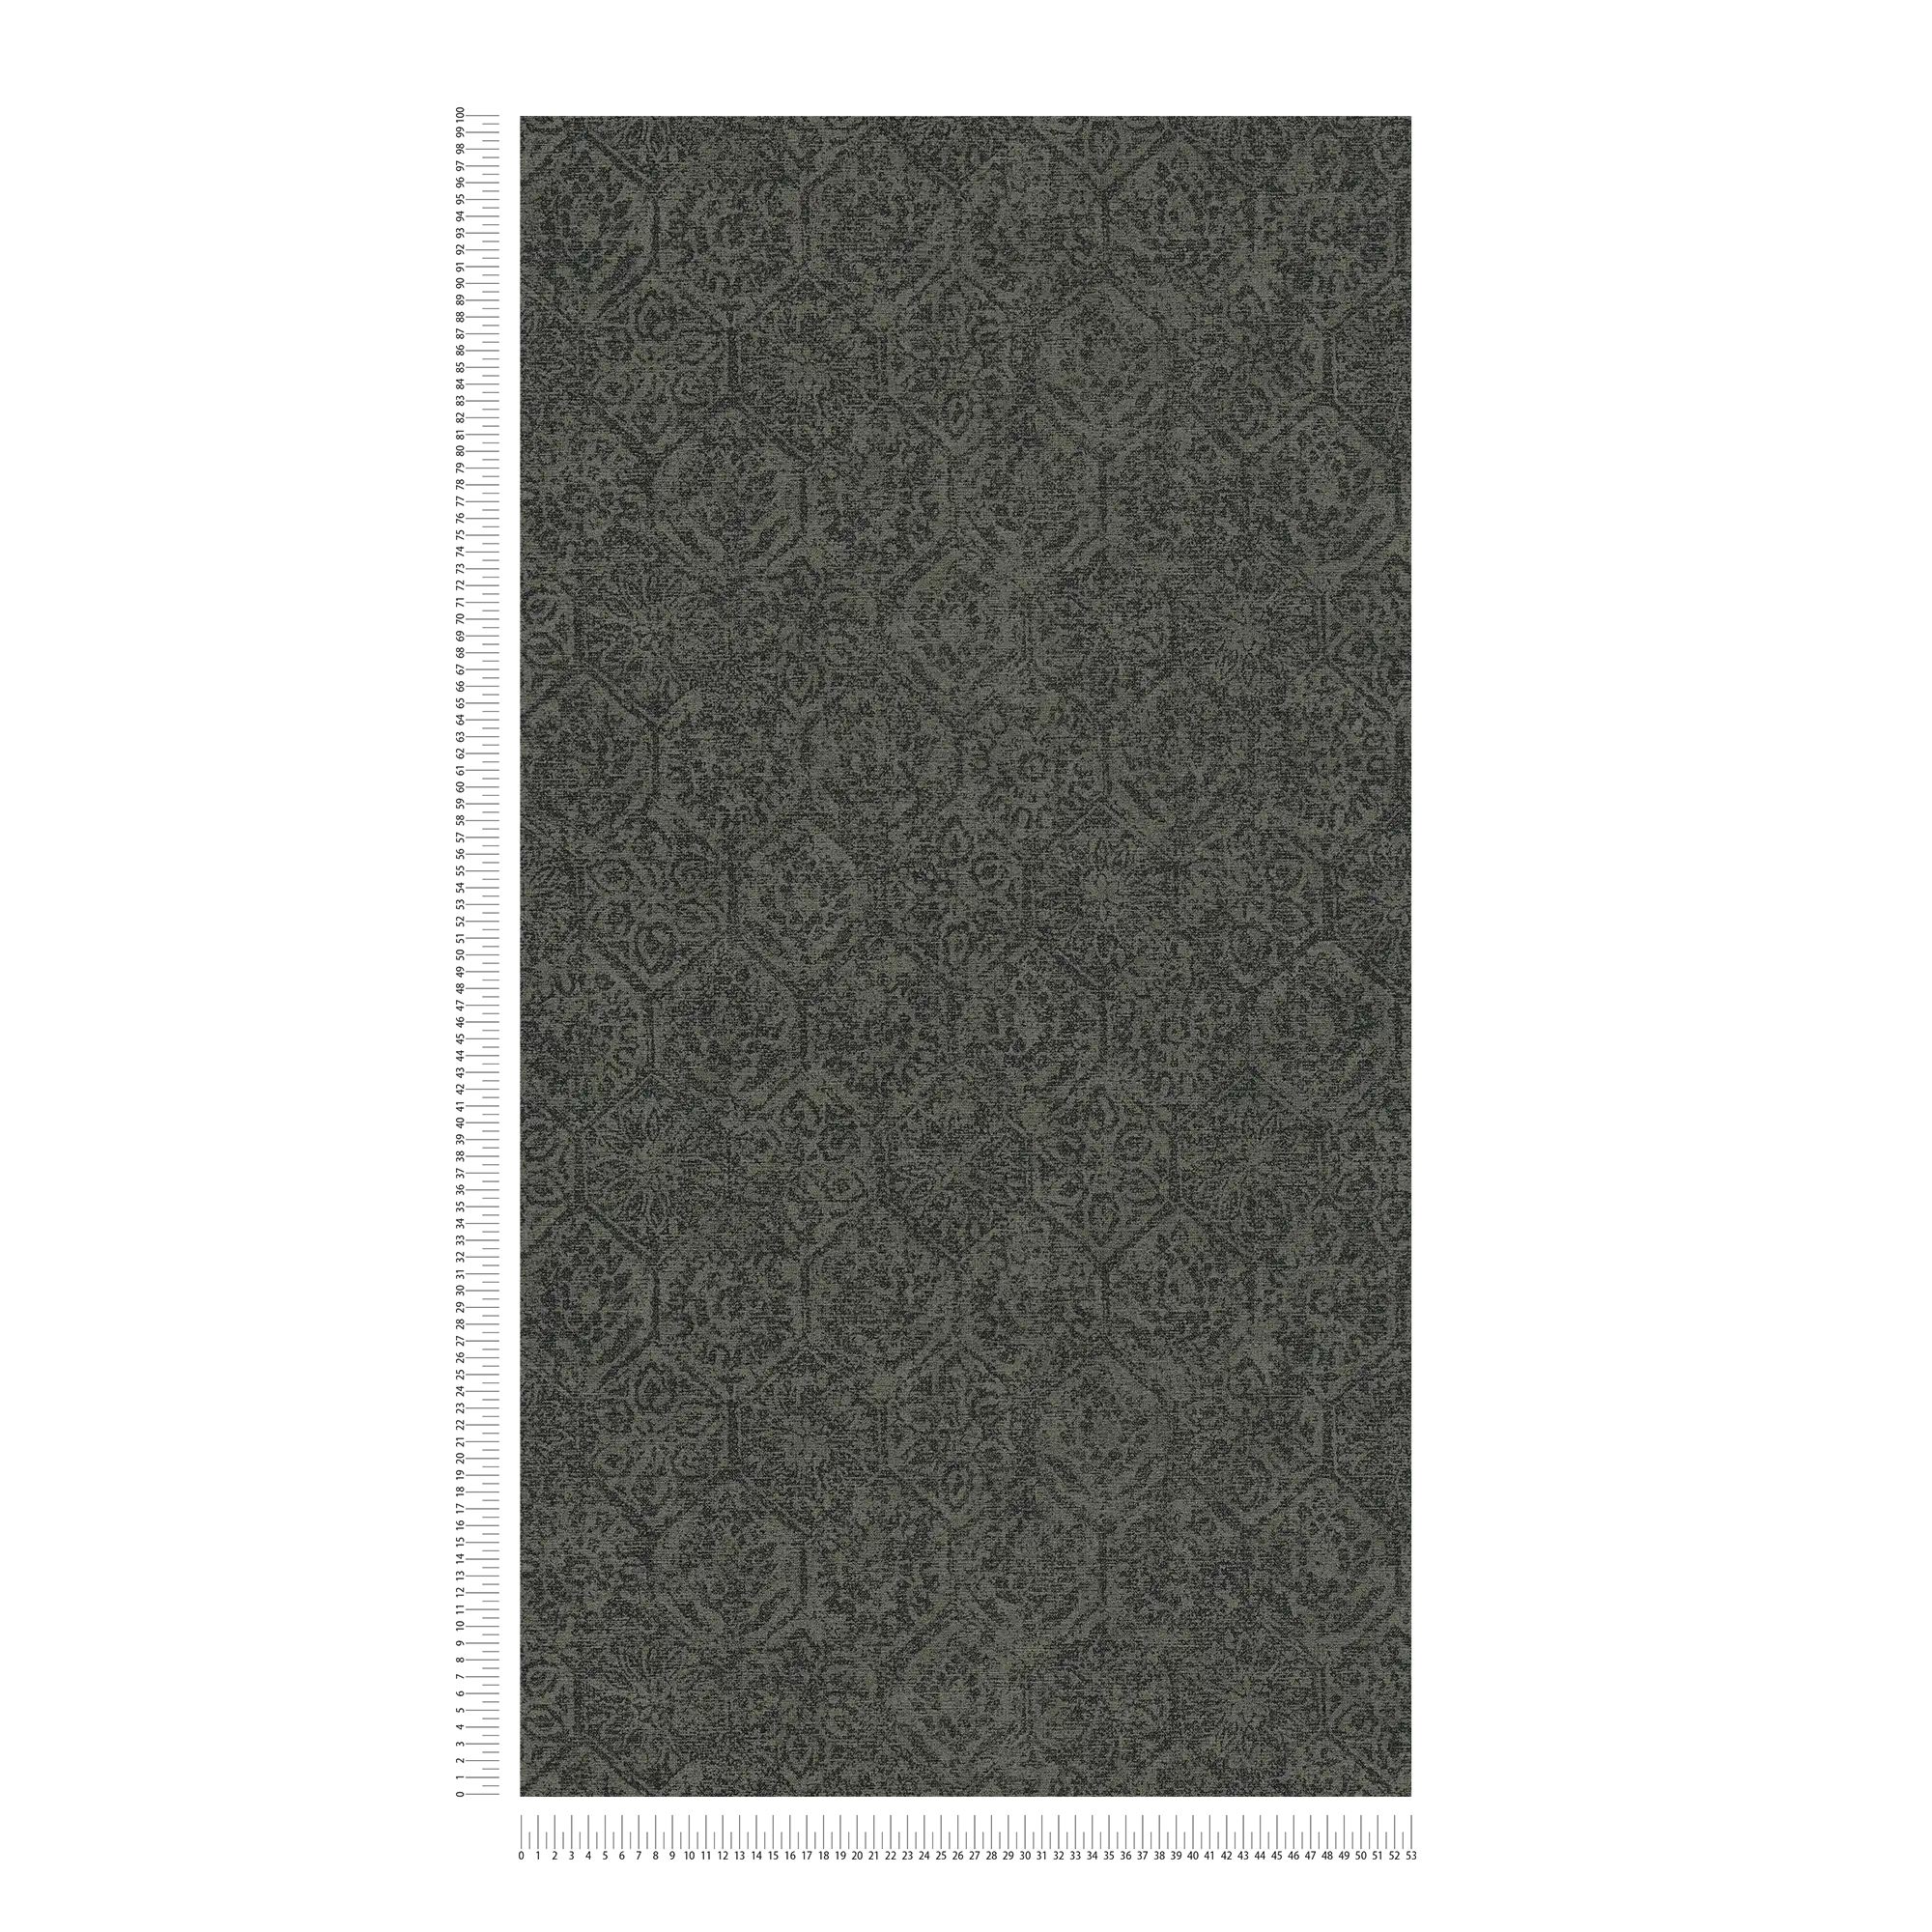             Papier peint Vintage motif floral used look - gris, noir
        